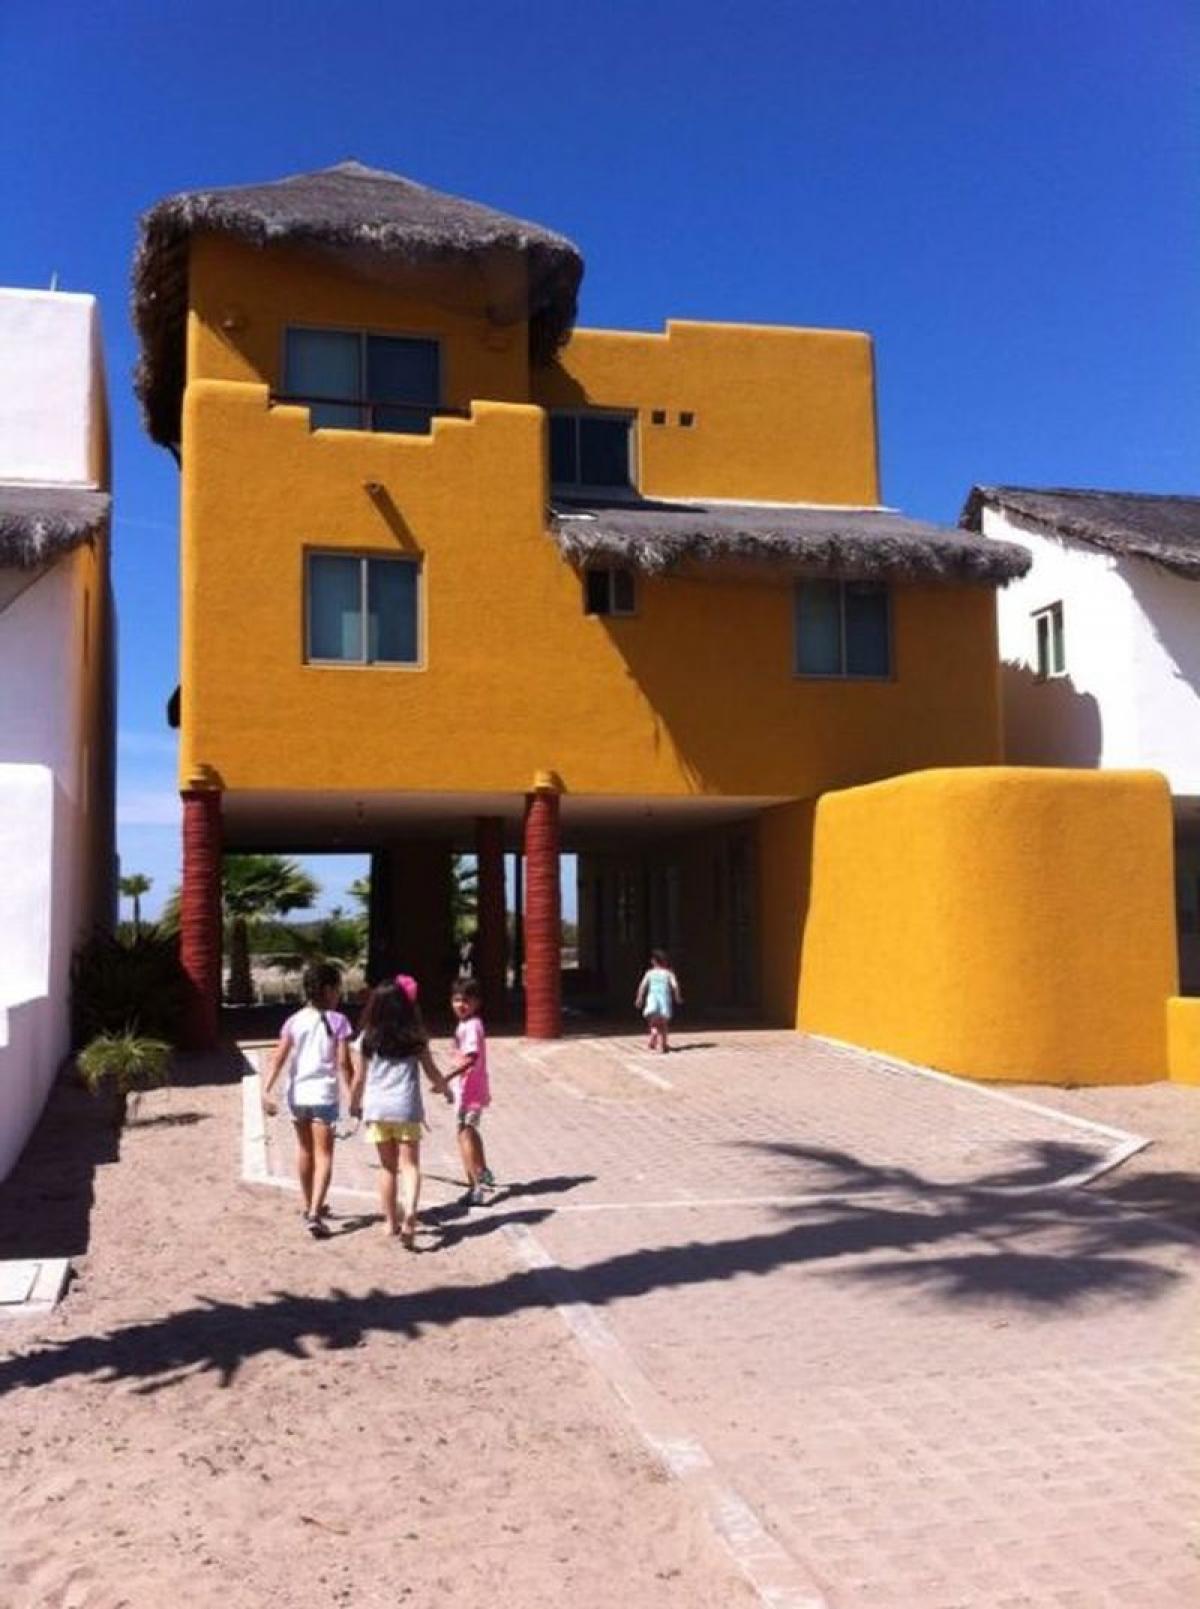 Picture of Home For Sale in Navolato, Sinaloa, Mexico